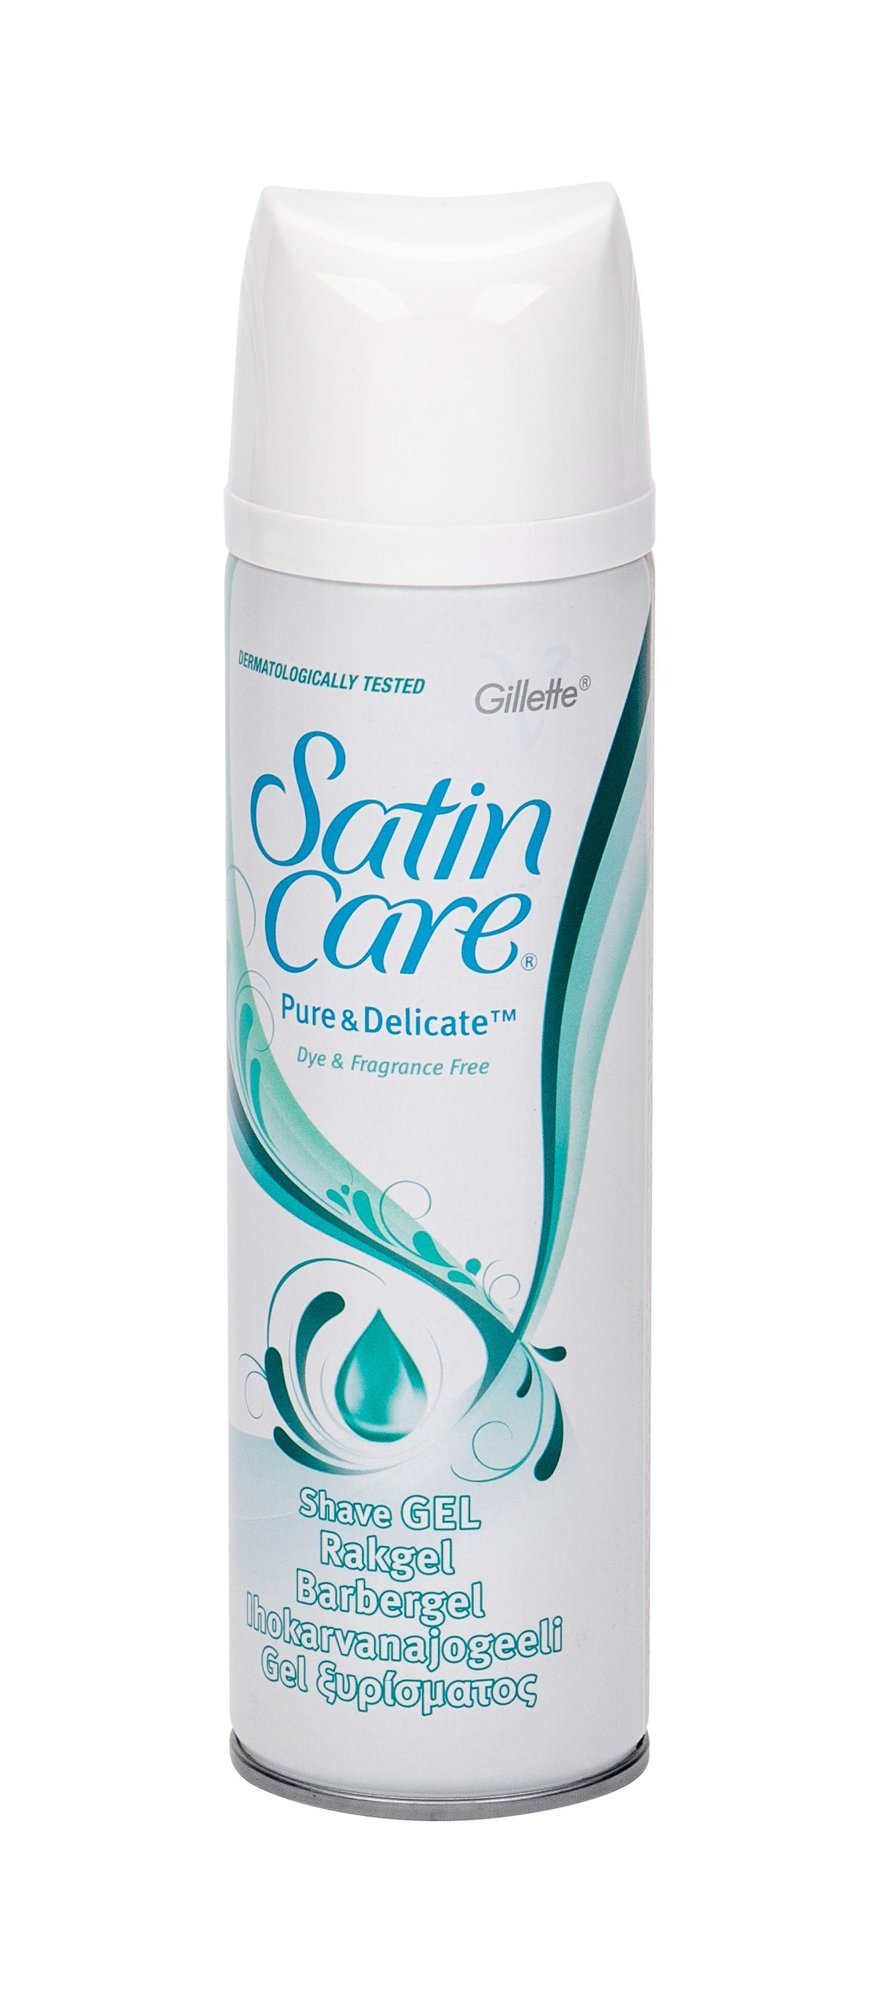 Gillette Satin Care Pure & Delicate skutimosi gelis